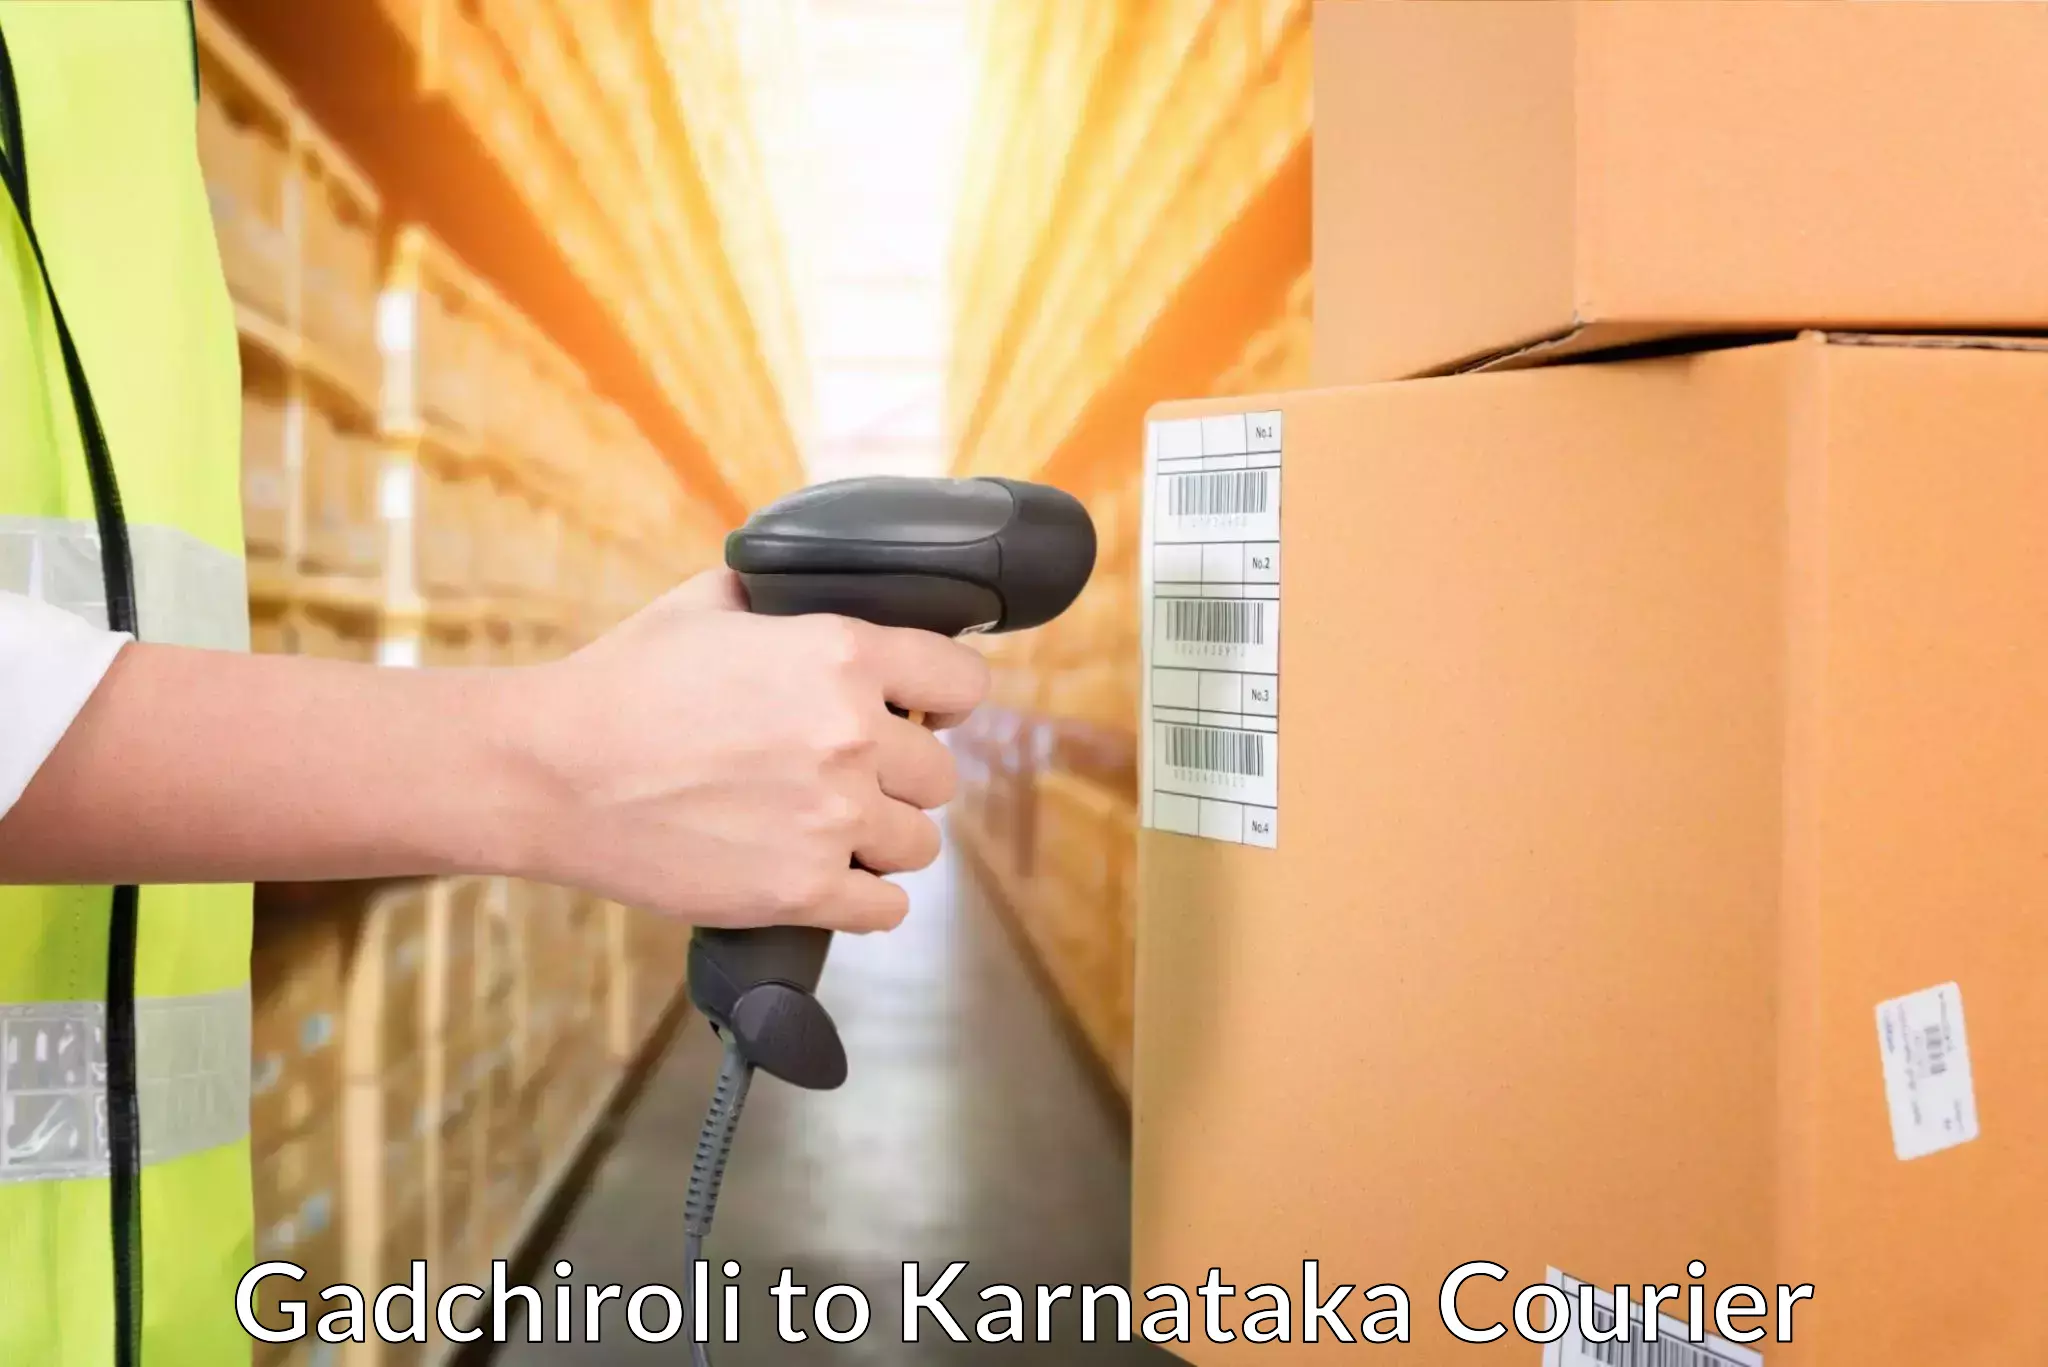 Secure freight services Gadchiroli to Karnataka